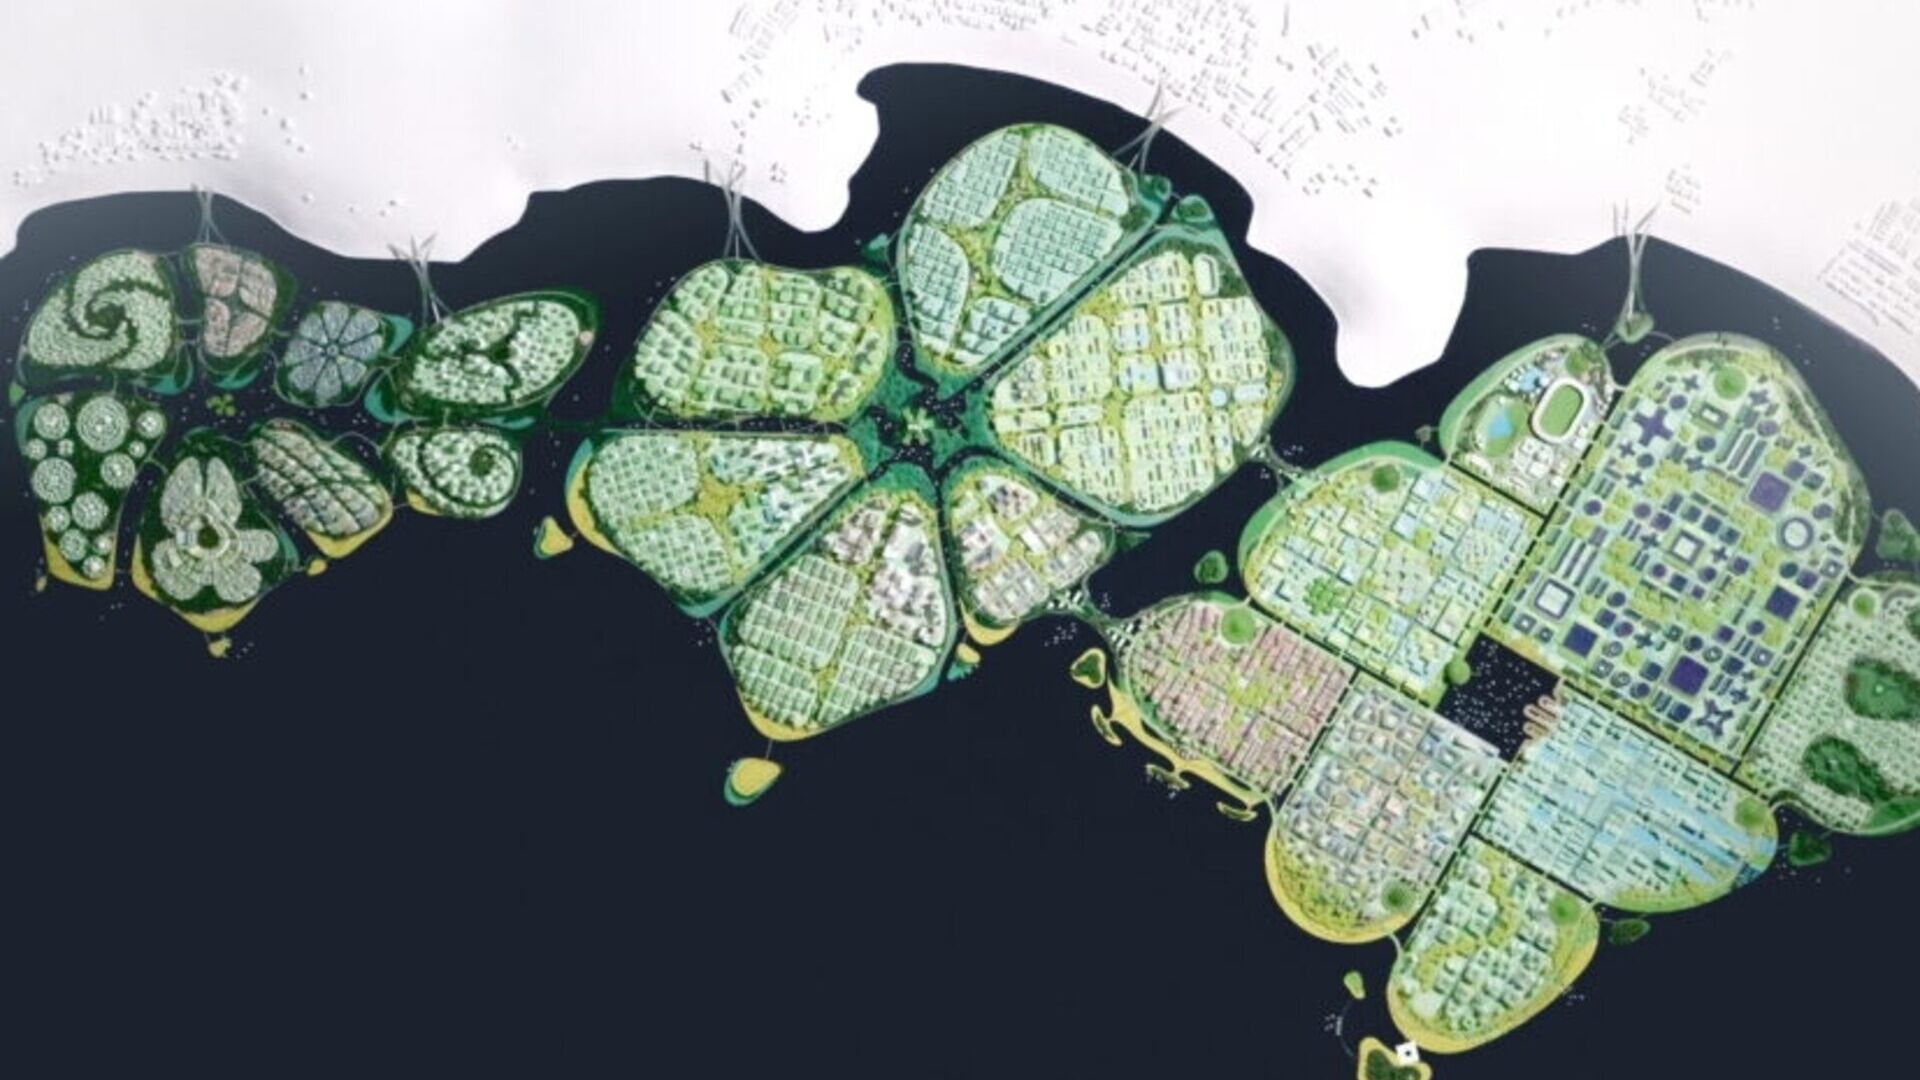 BiodiverCity: mynd úr lofti af eyjunum þremur The Channels, The Mangroves og The Lagoon, sem mun mynda hina nýstárlegu og sjálfbæru borg BiodiverCity árið 2030 í Malasíu nálægt Penang